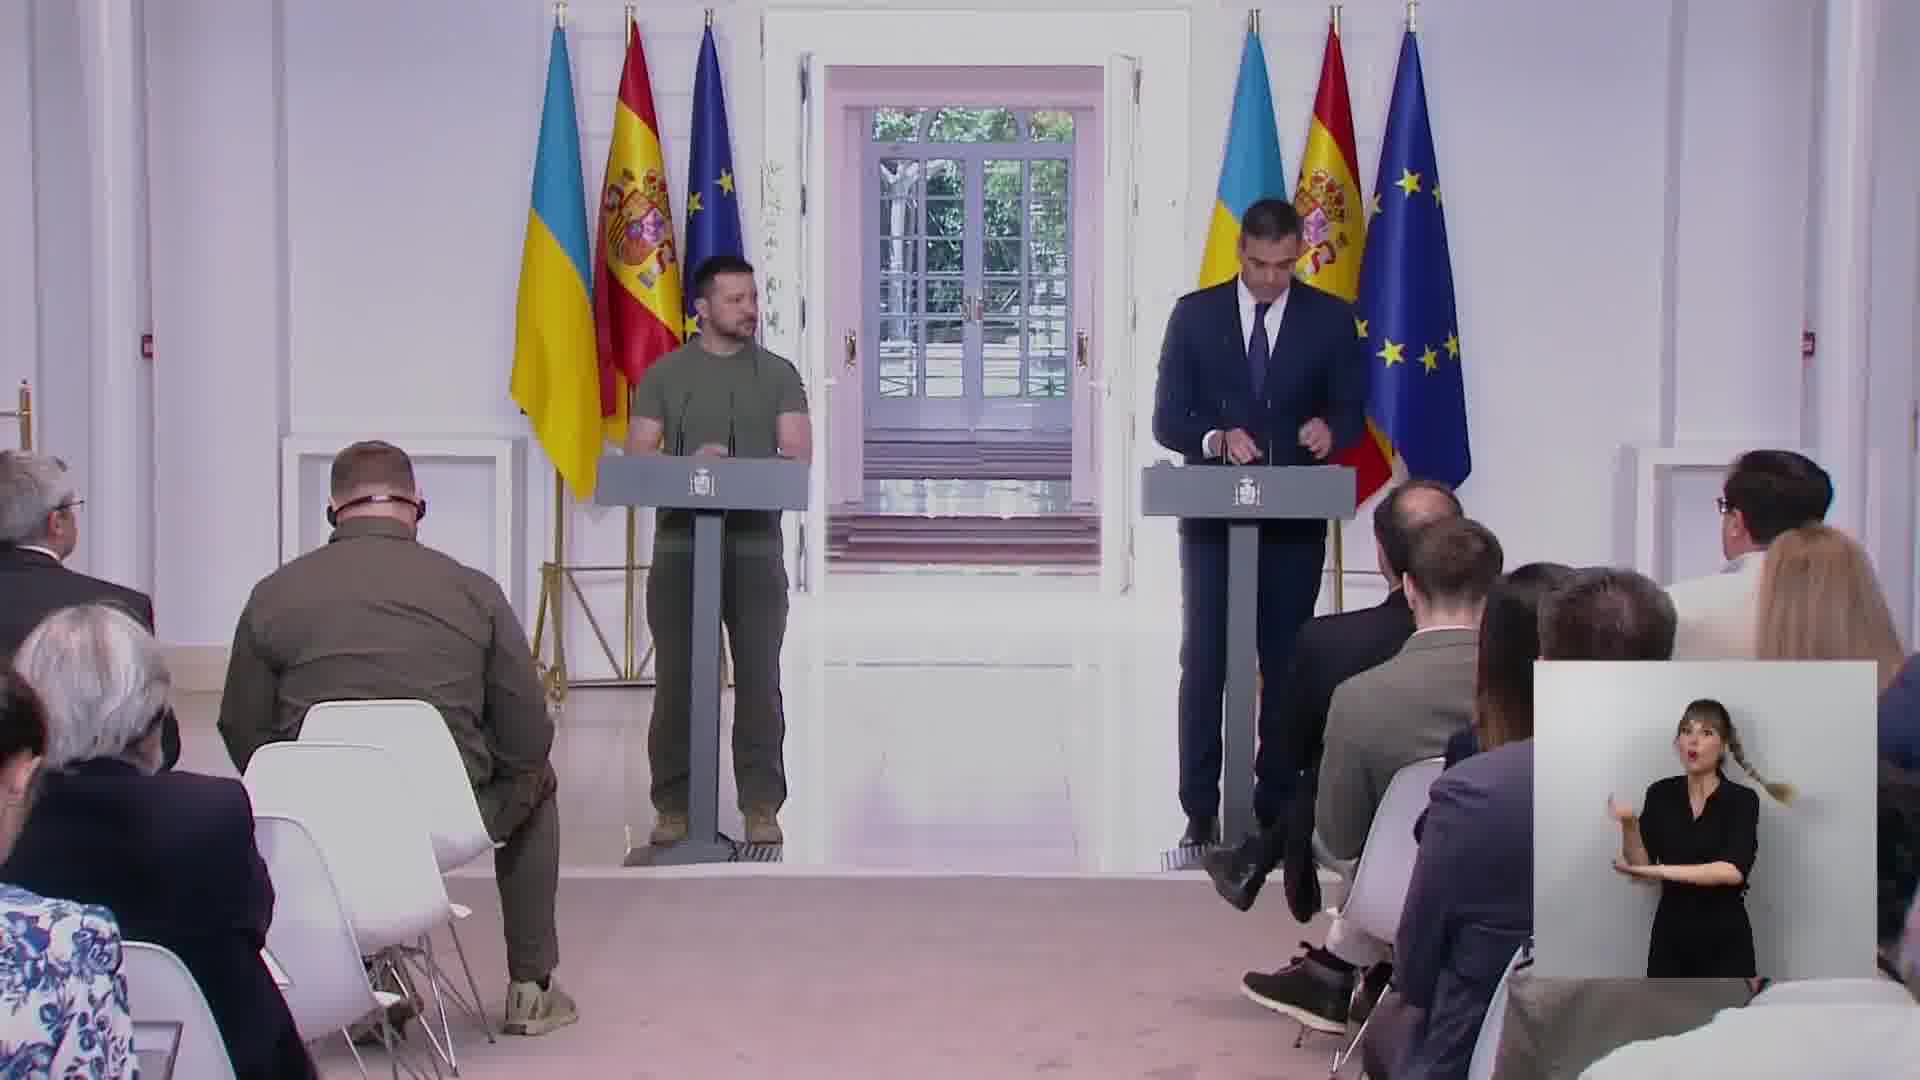 Санчес подтверждает твердую приверженность Испании Украине и выделяет несколько направлений: Украине будут предоставлены инструменты для ее защиты. Гуманитарная, финансовая поддержка, помощь в восстановлении. Военные обязательства в размере одного миллиарда евро для укрепления своего потенциала